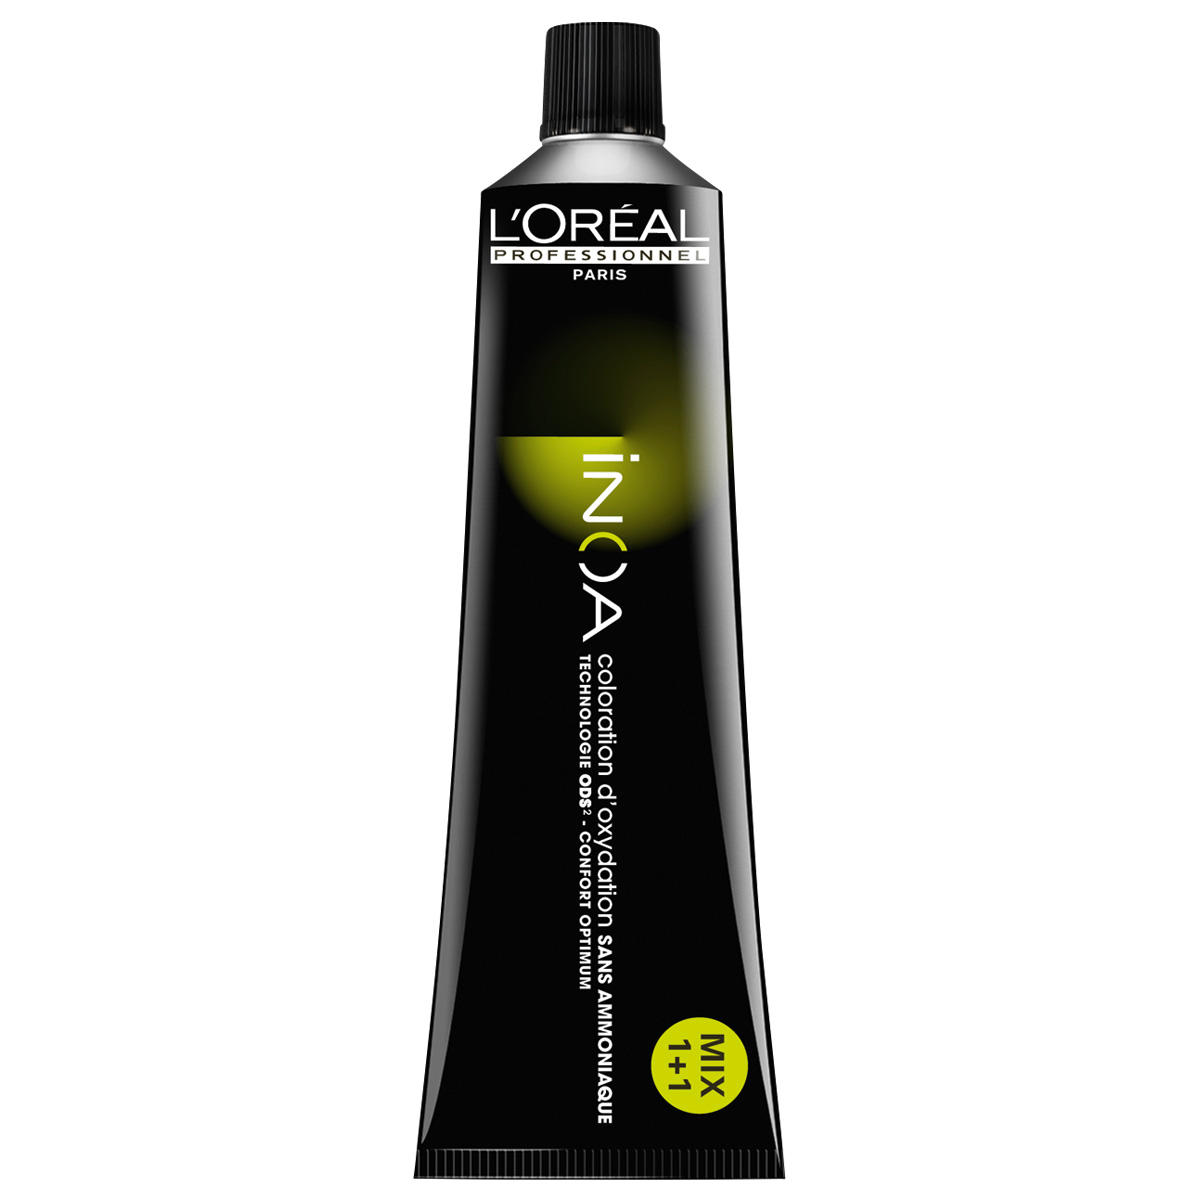 L'Oréal Professionnel Paris Coloration 10½,22 Biondo platino chiaro profondo Irisé, tubo 60 ml - 1